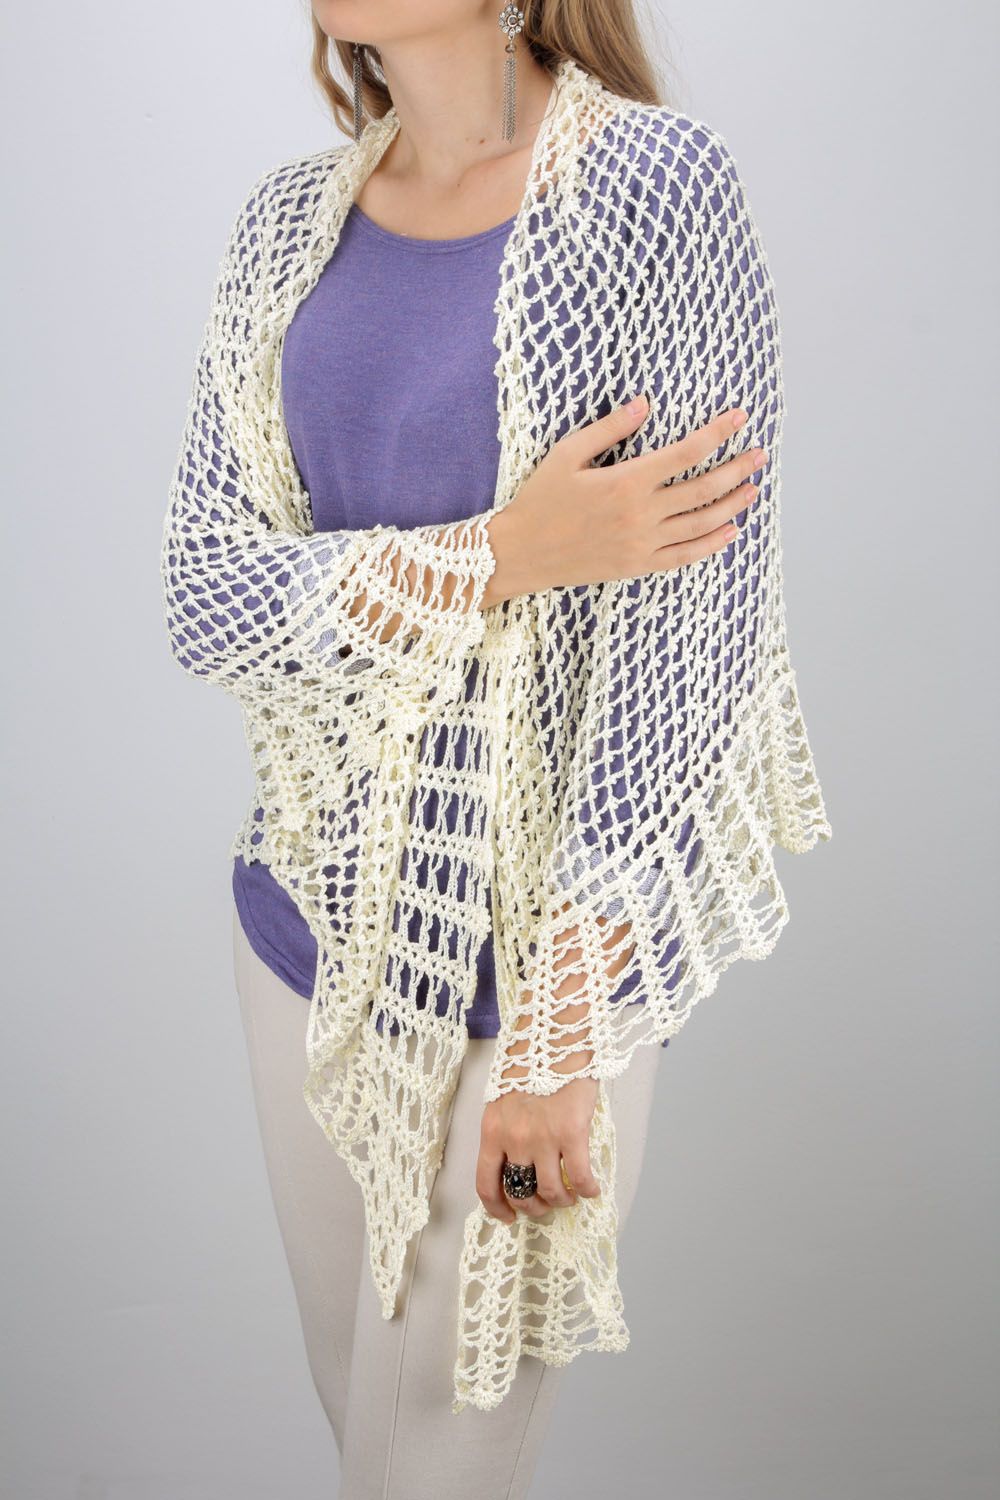 Gehäkelter Schal für Frauen foto 1